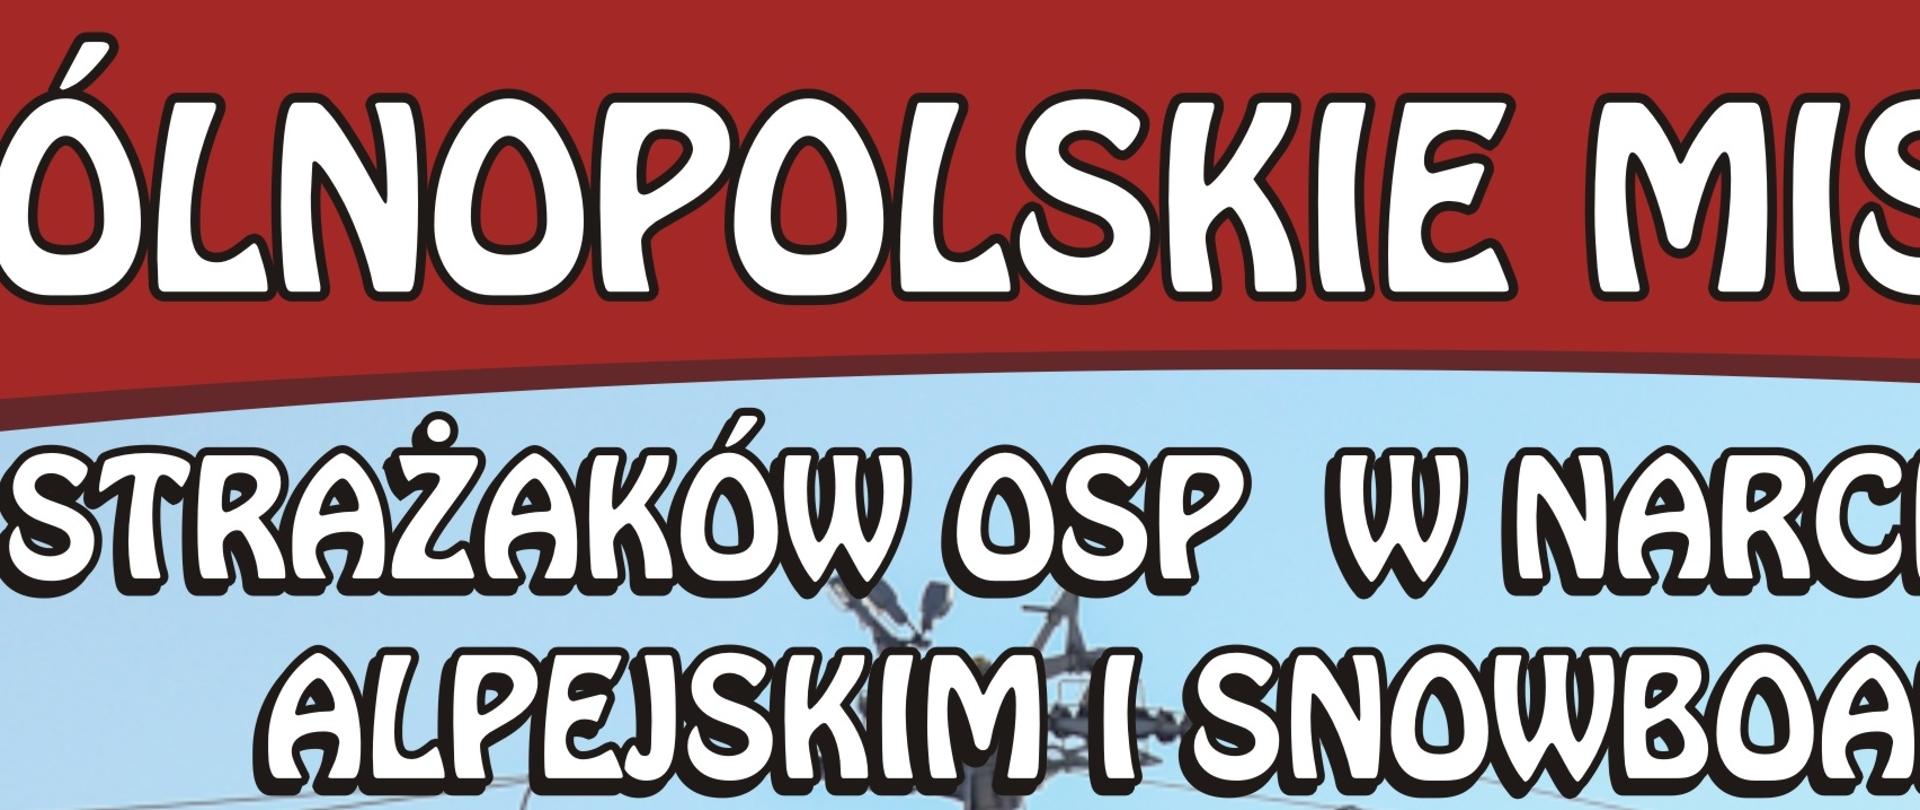 Napis IX Ogólnopolskie Mistrzostwa Strażaków OSP w Narciarstwie Alpejskim i Snowboardzie